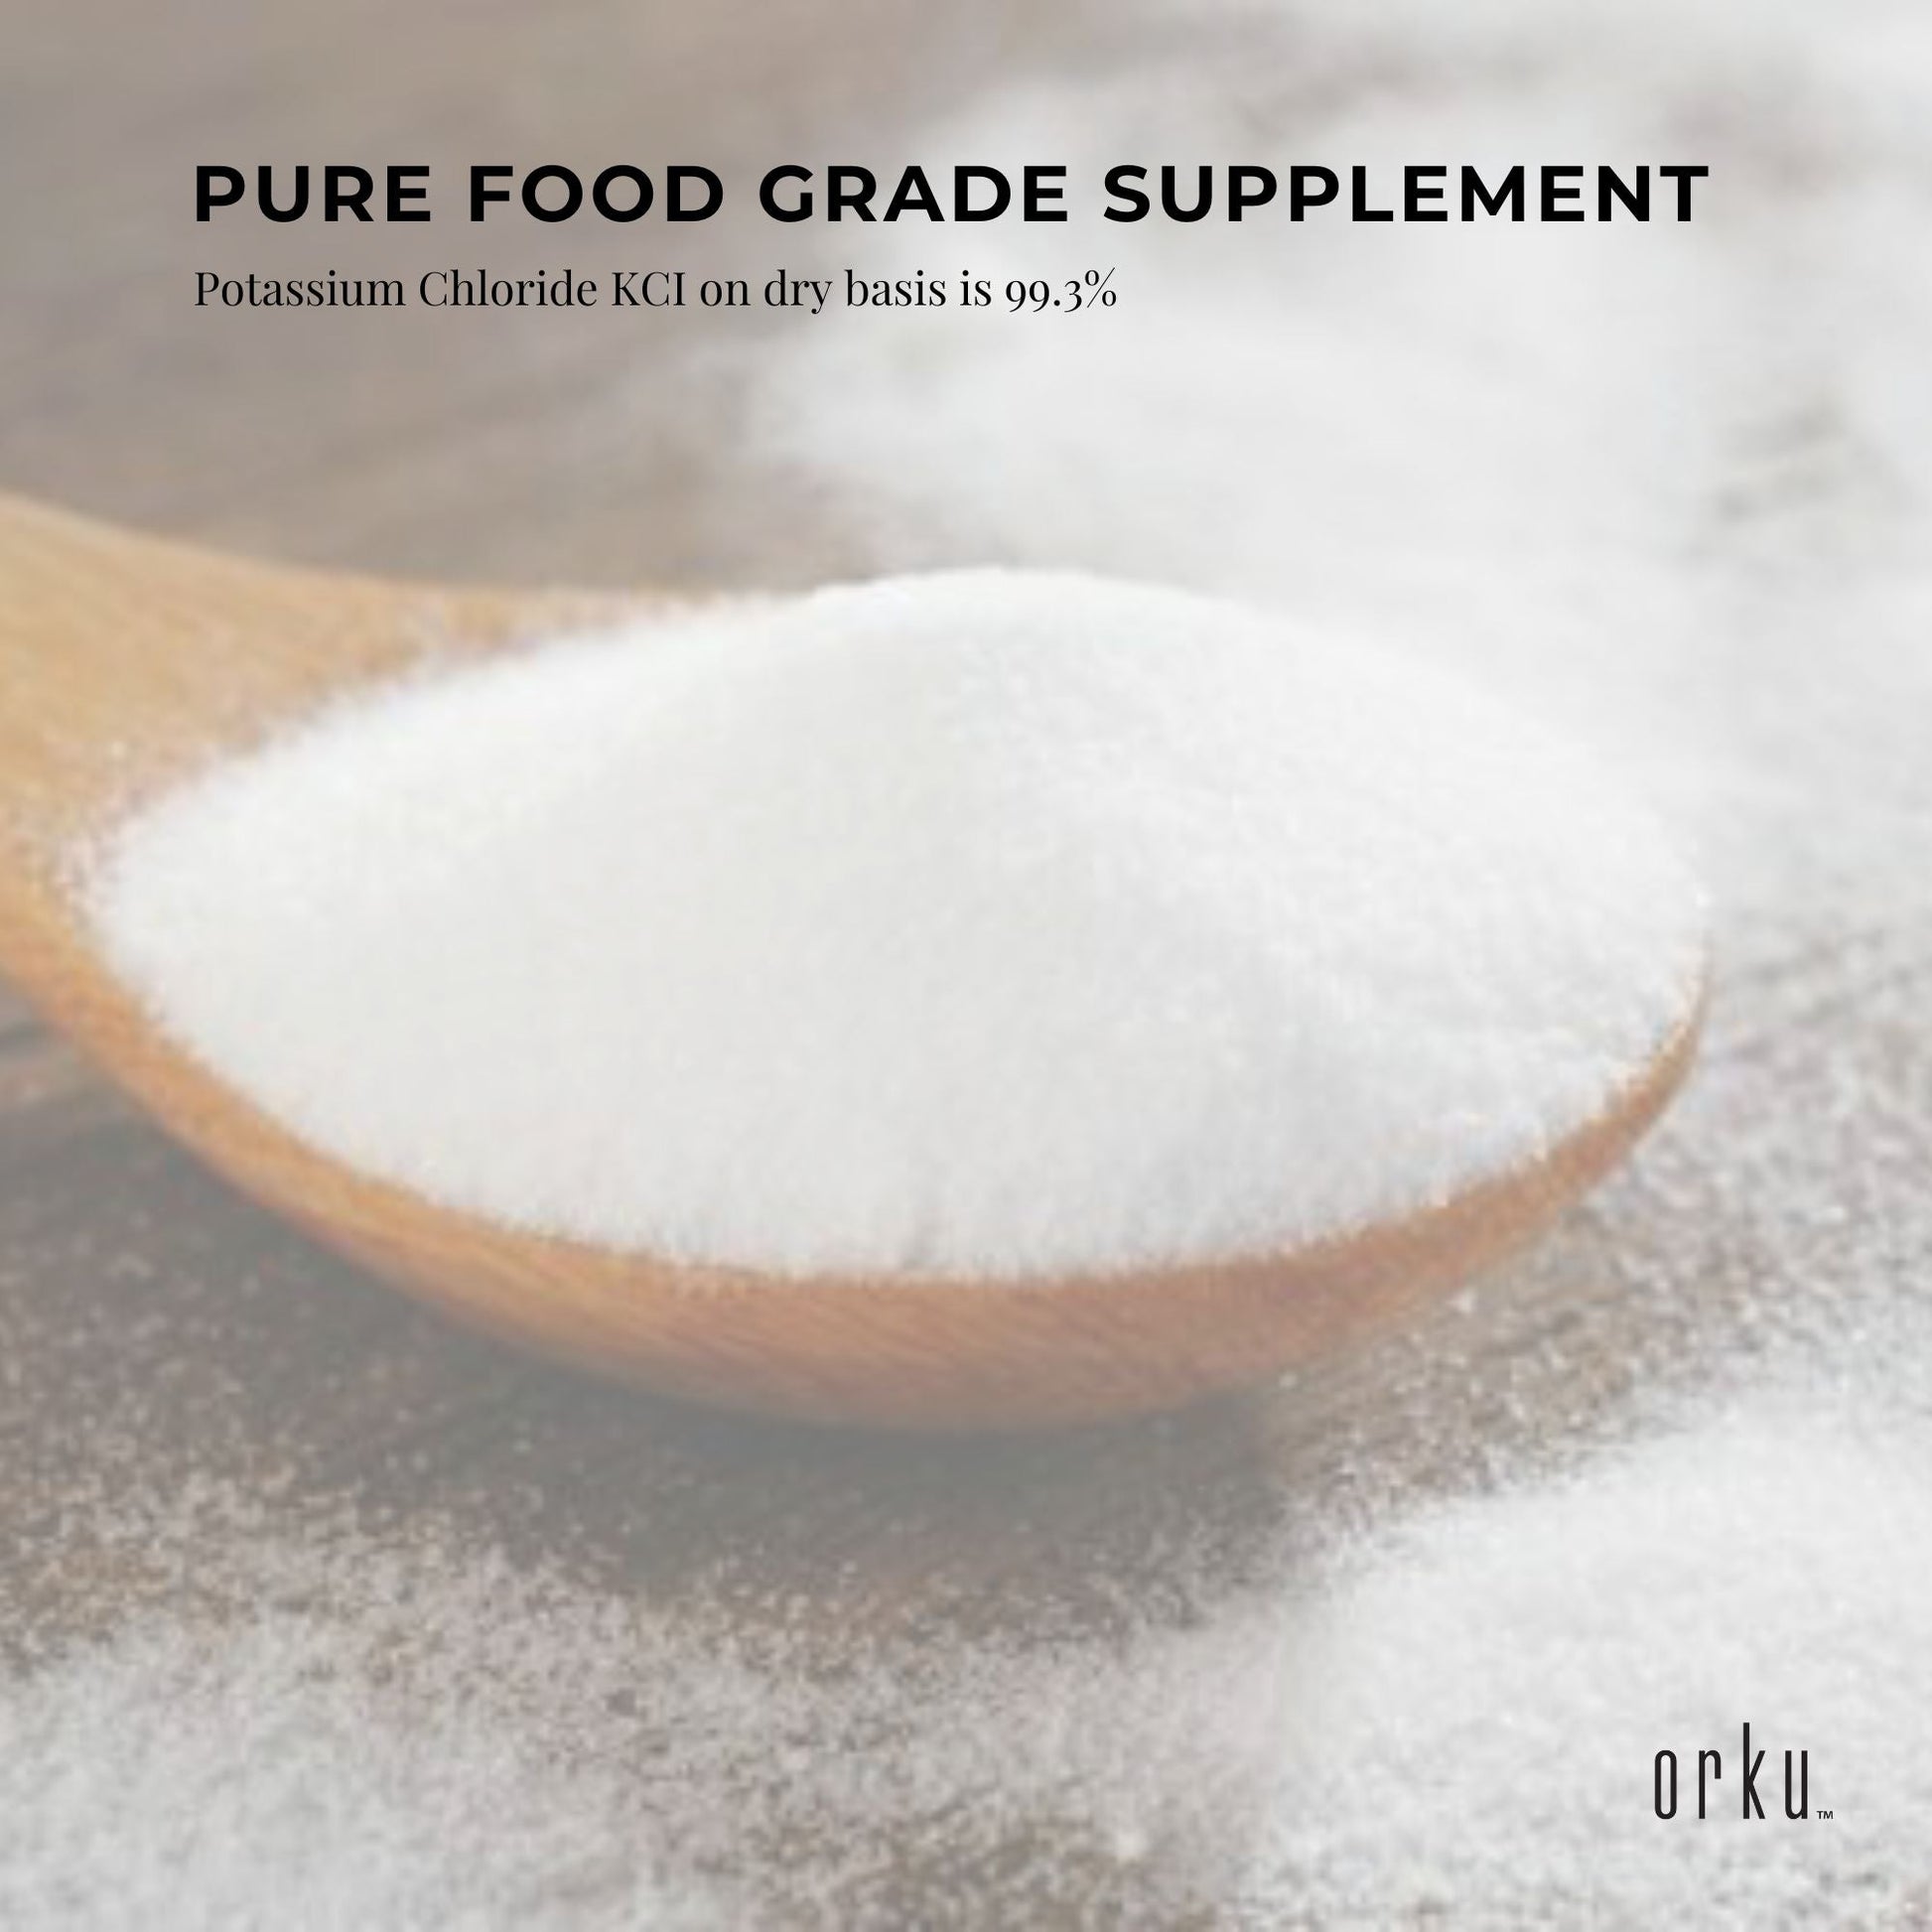 Bulk 20Kg Potassium Chloride Powder Tub - Pure KCL E508 Food Grade Supplement